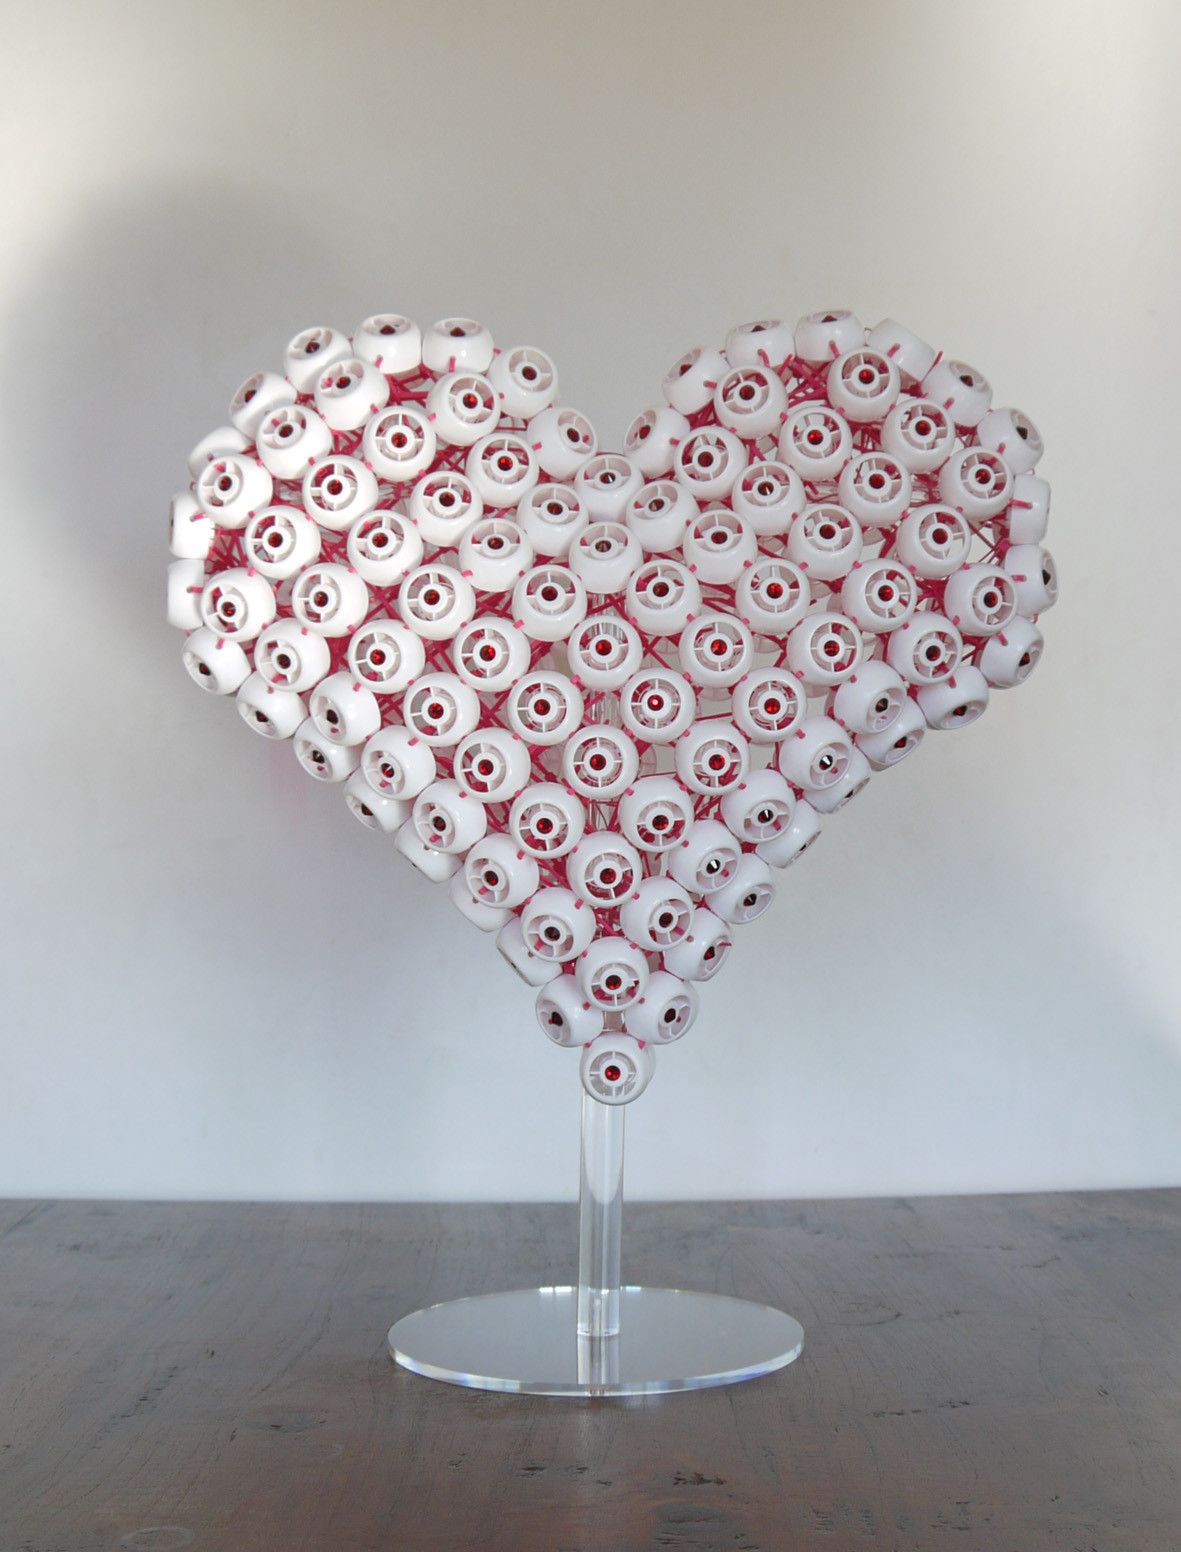 SCULTURA JORGE CASTRO GOMEZ " WHITE HEART "  dimensioni L 30 x H 40 x P 15 cm.